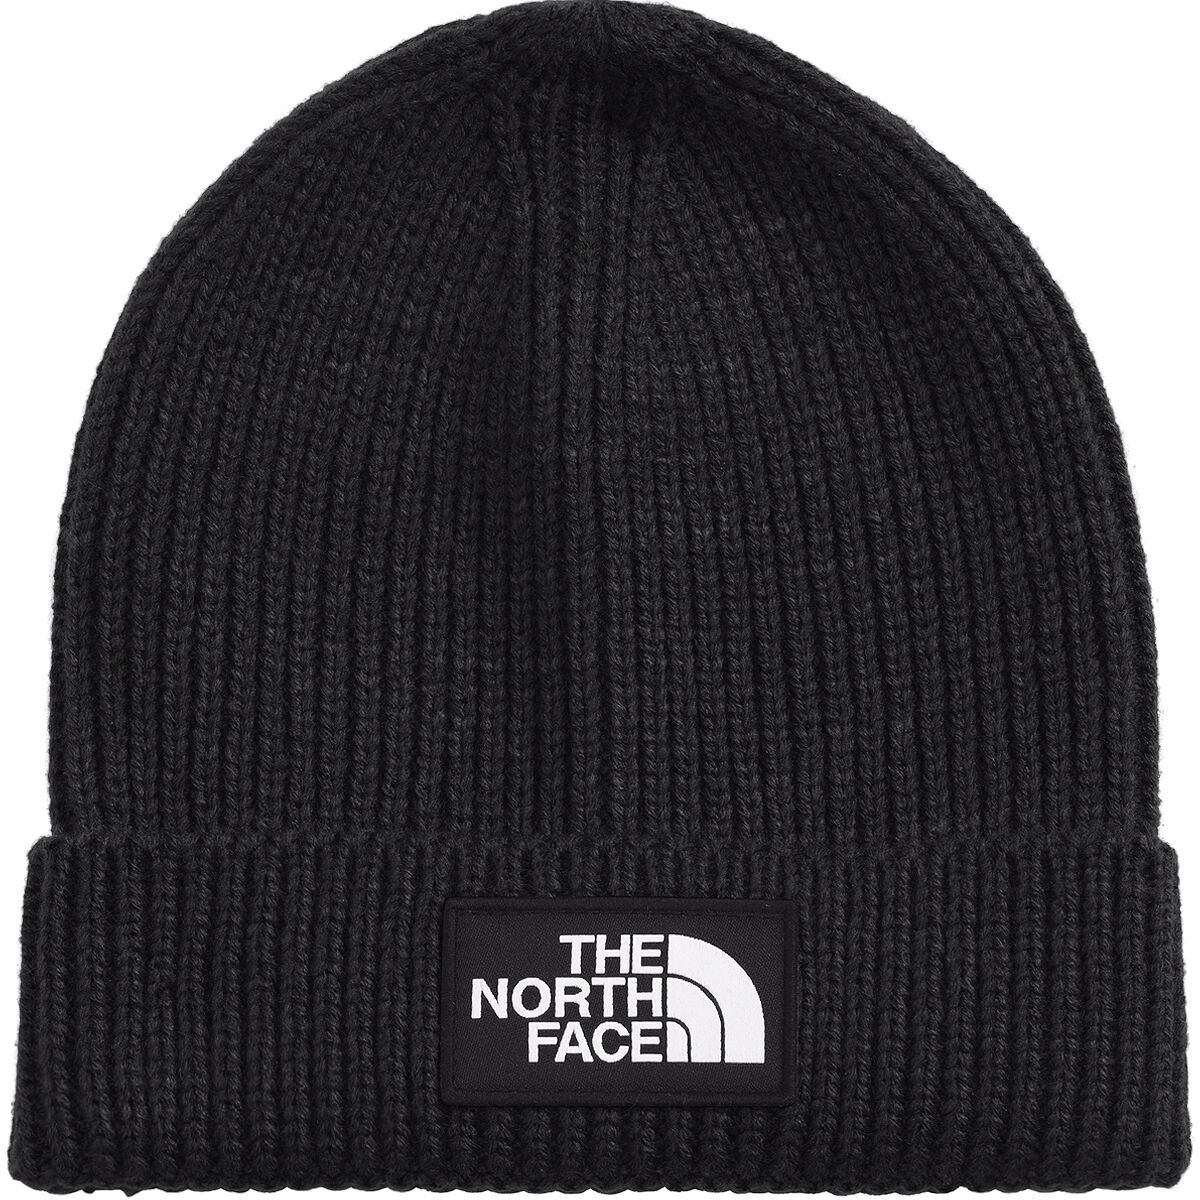 The North Face Box Logo Cuffed Beanie - Kids'